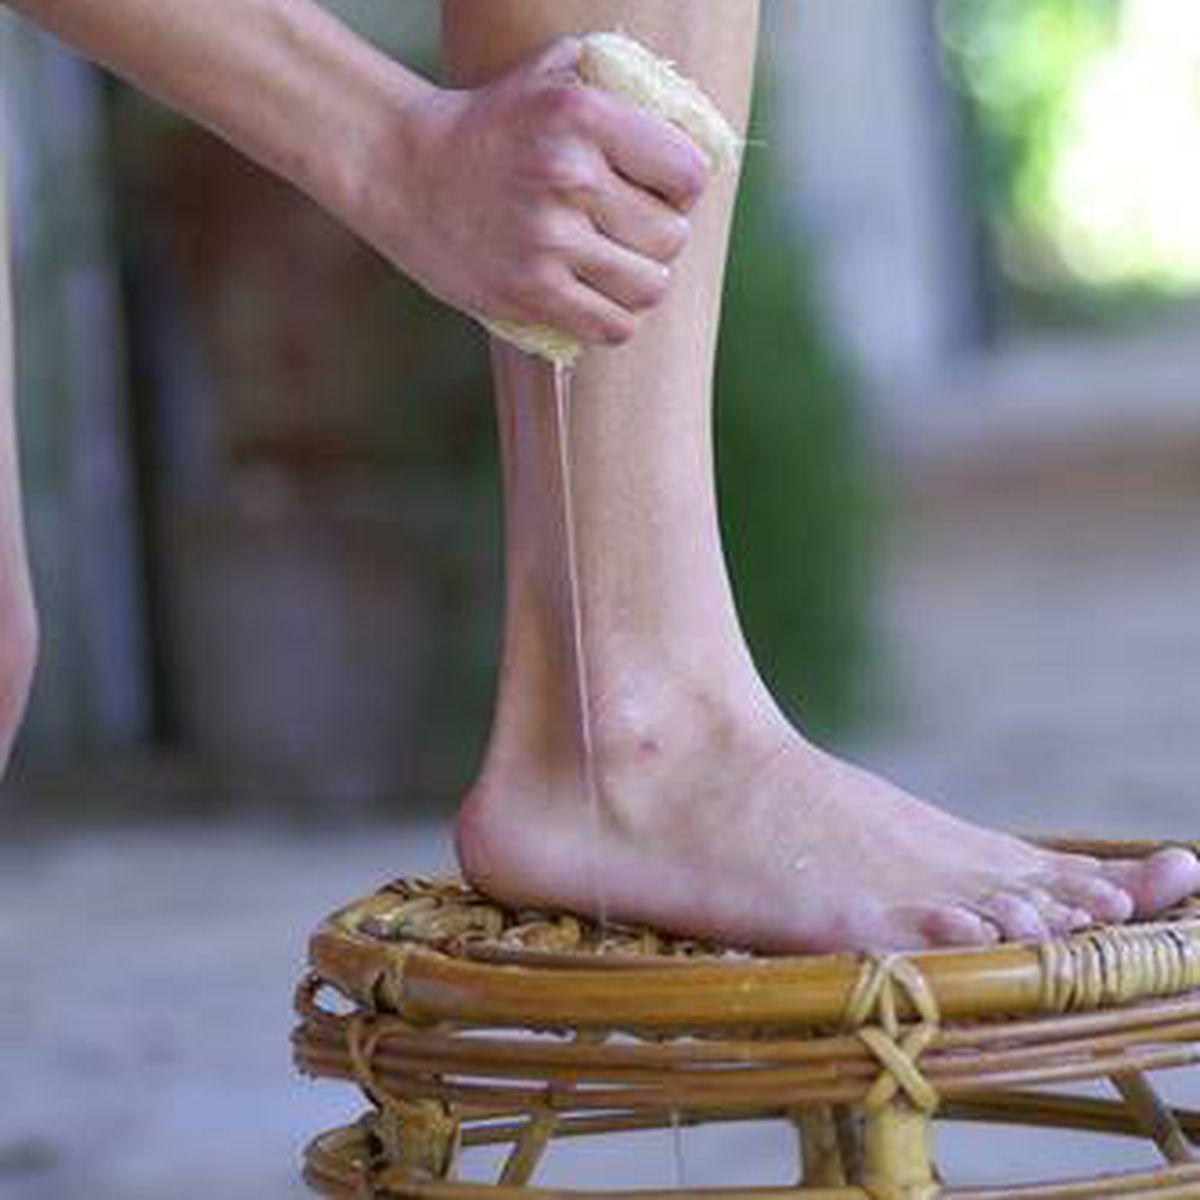 picioarele de gimnastica cu videoclipuri varicoase venele varicoase semneaza tratamentul